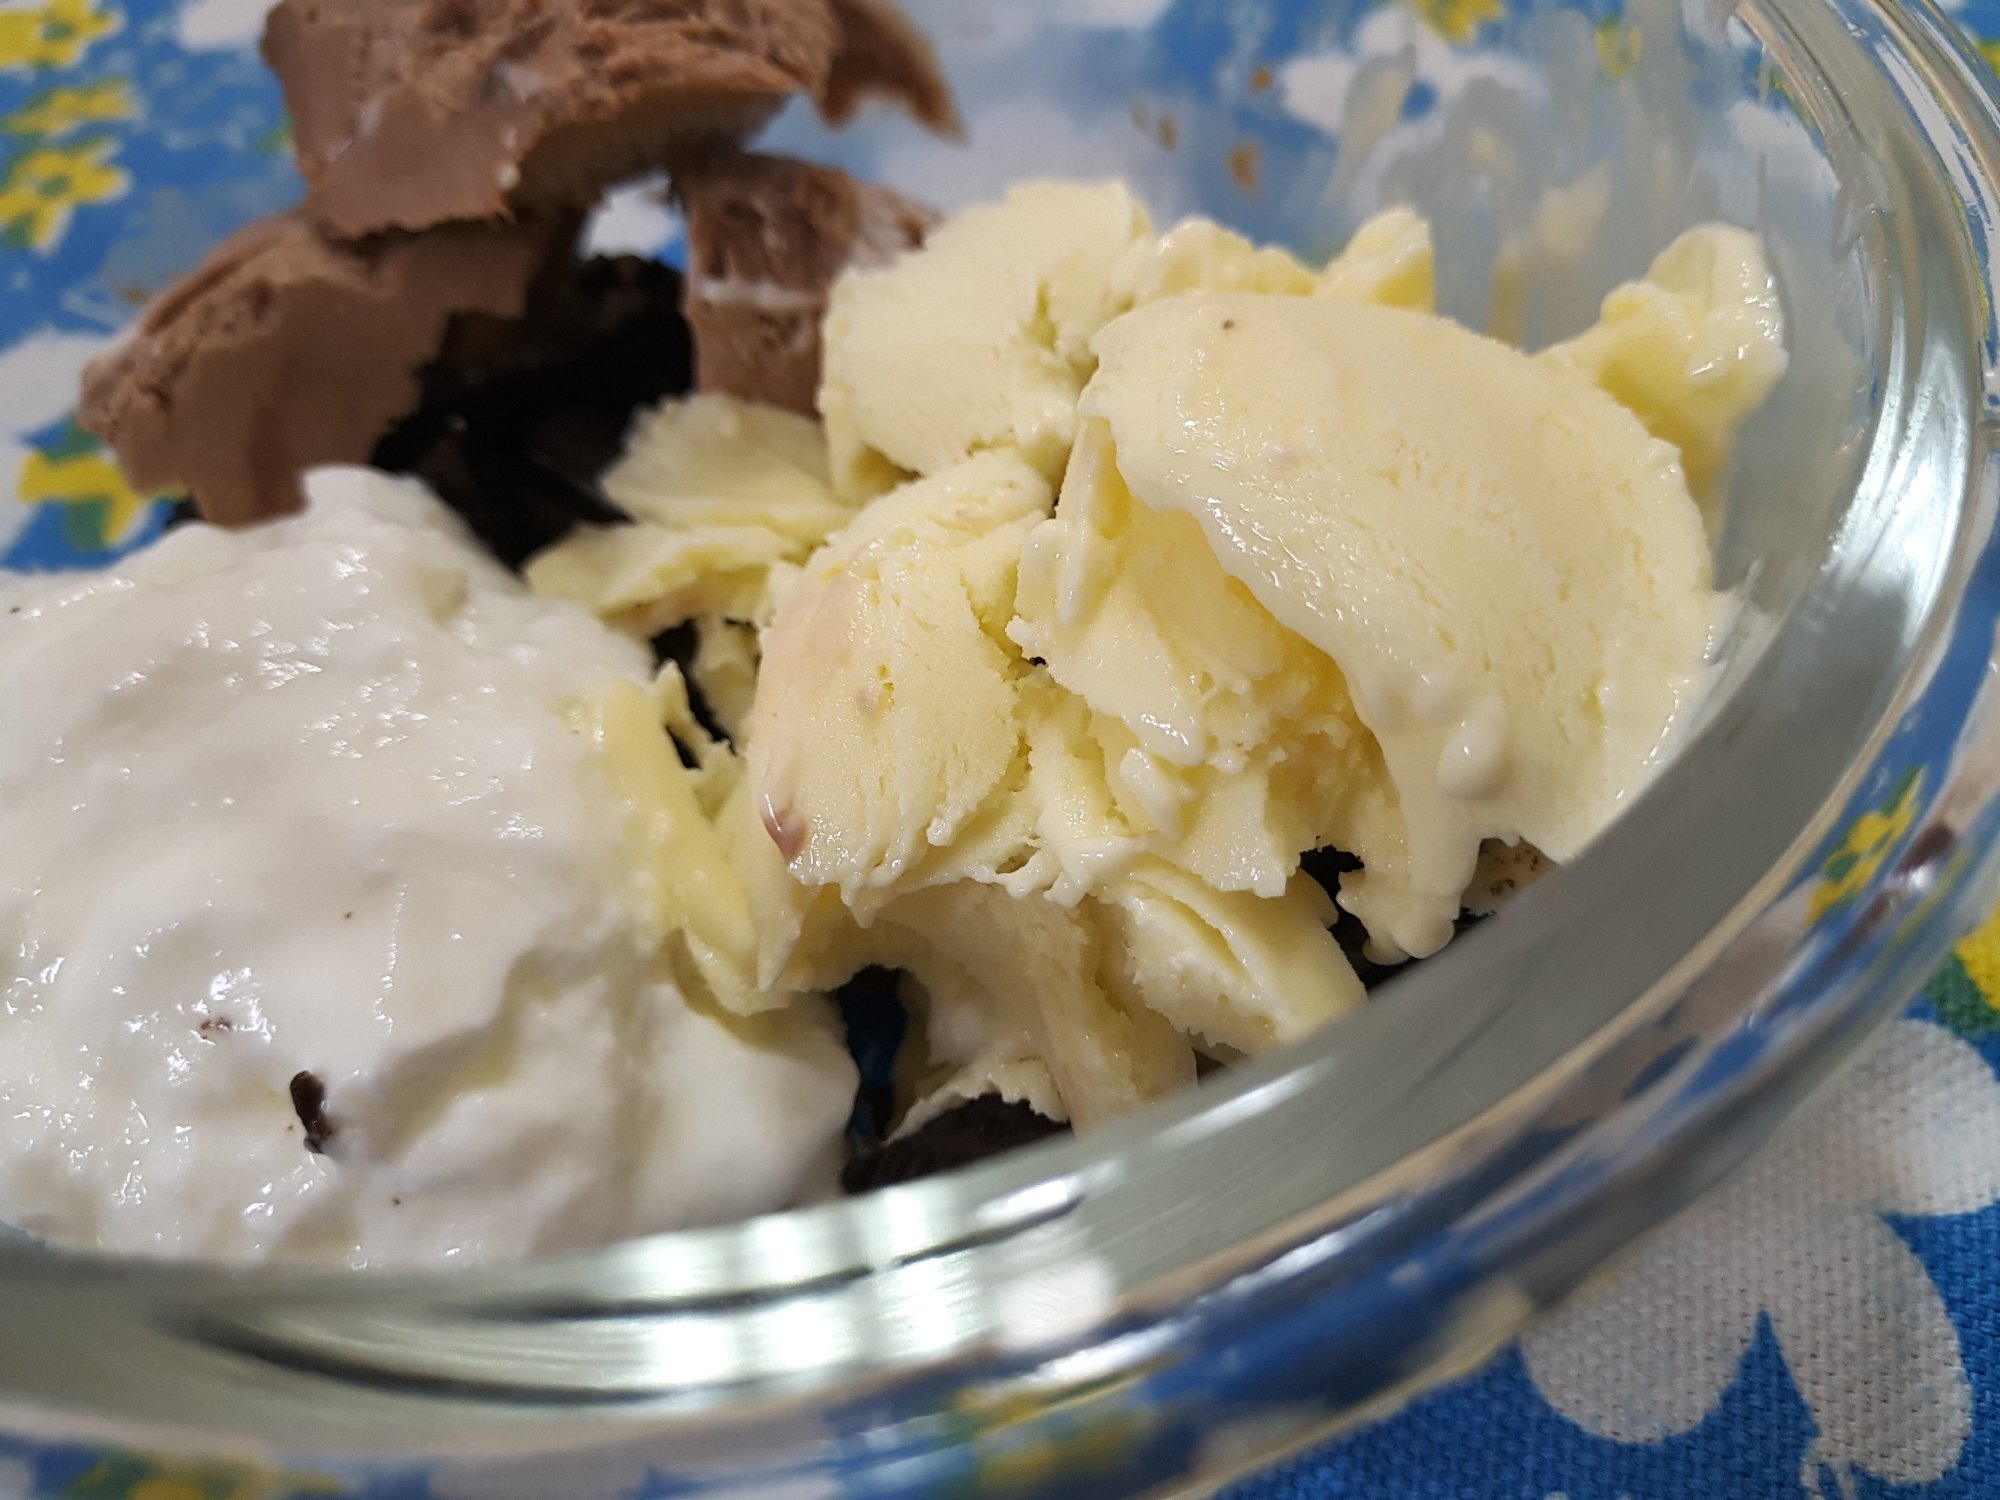 岛本薰【不需要淡奶油的低脂牛奶冰淇淋】酸奶冰淇淋-手动/冰淇淋机均可